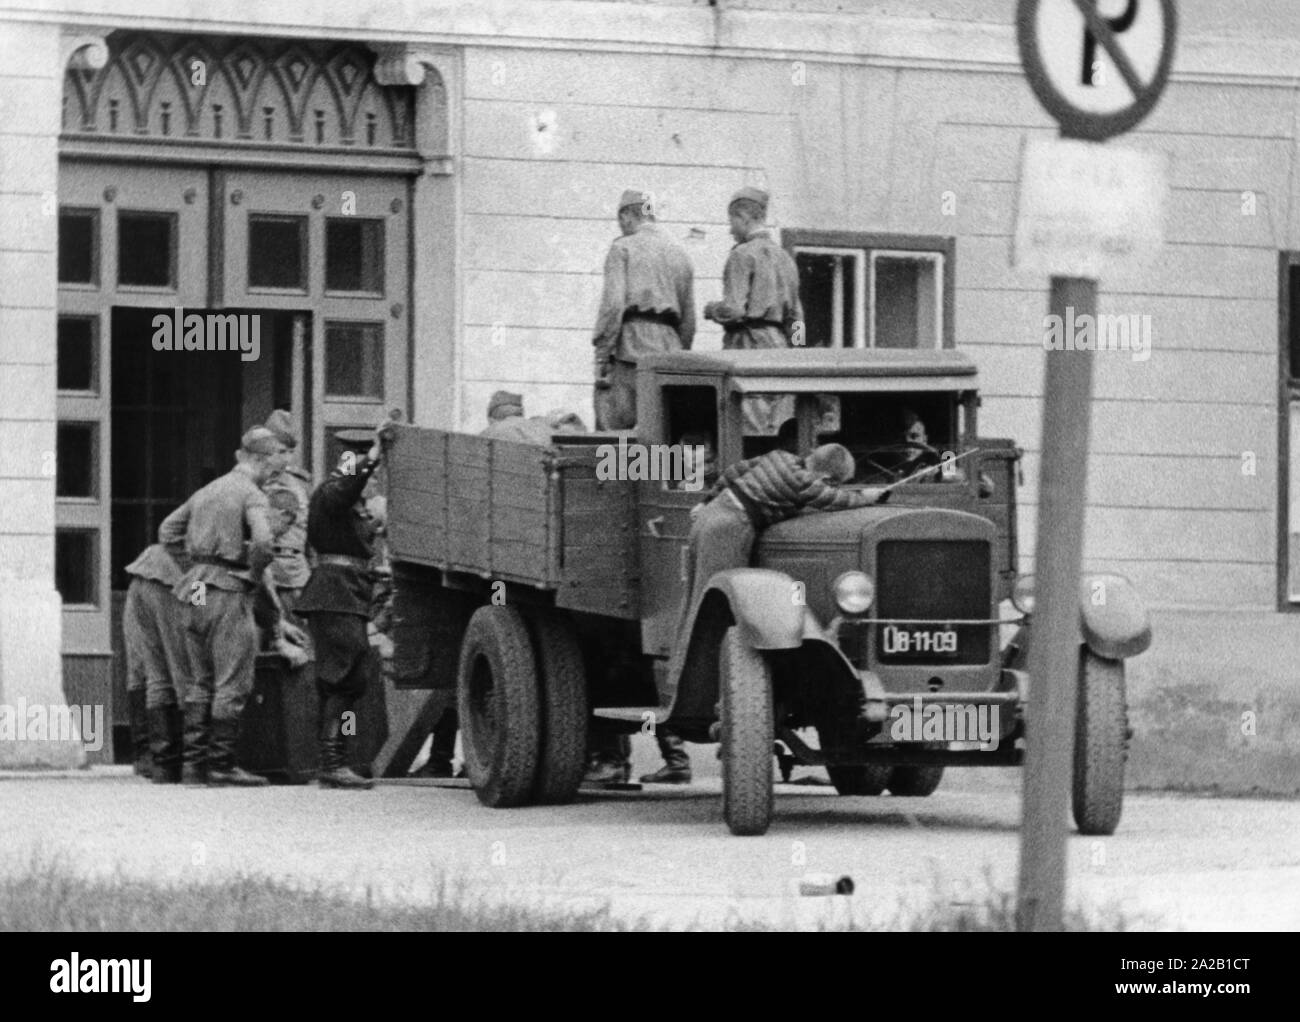 Soldati sovietici in Zwettl (Austria inferiore). Foto non datata, probabilmente negli anni cinquanta. Foto Stock